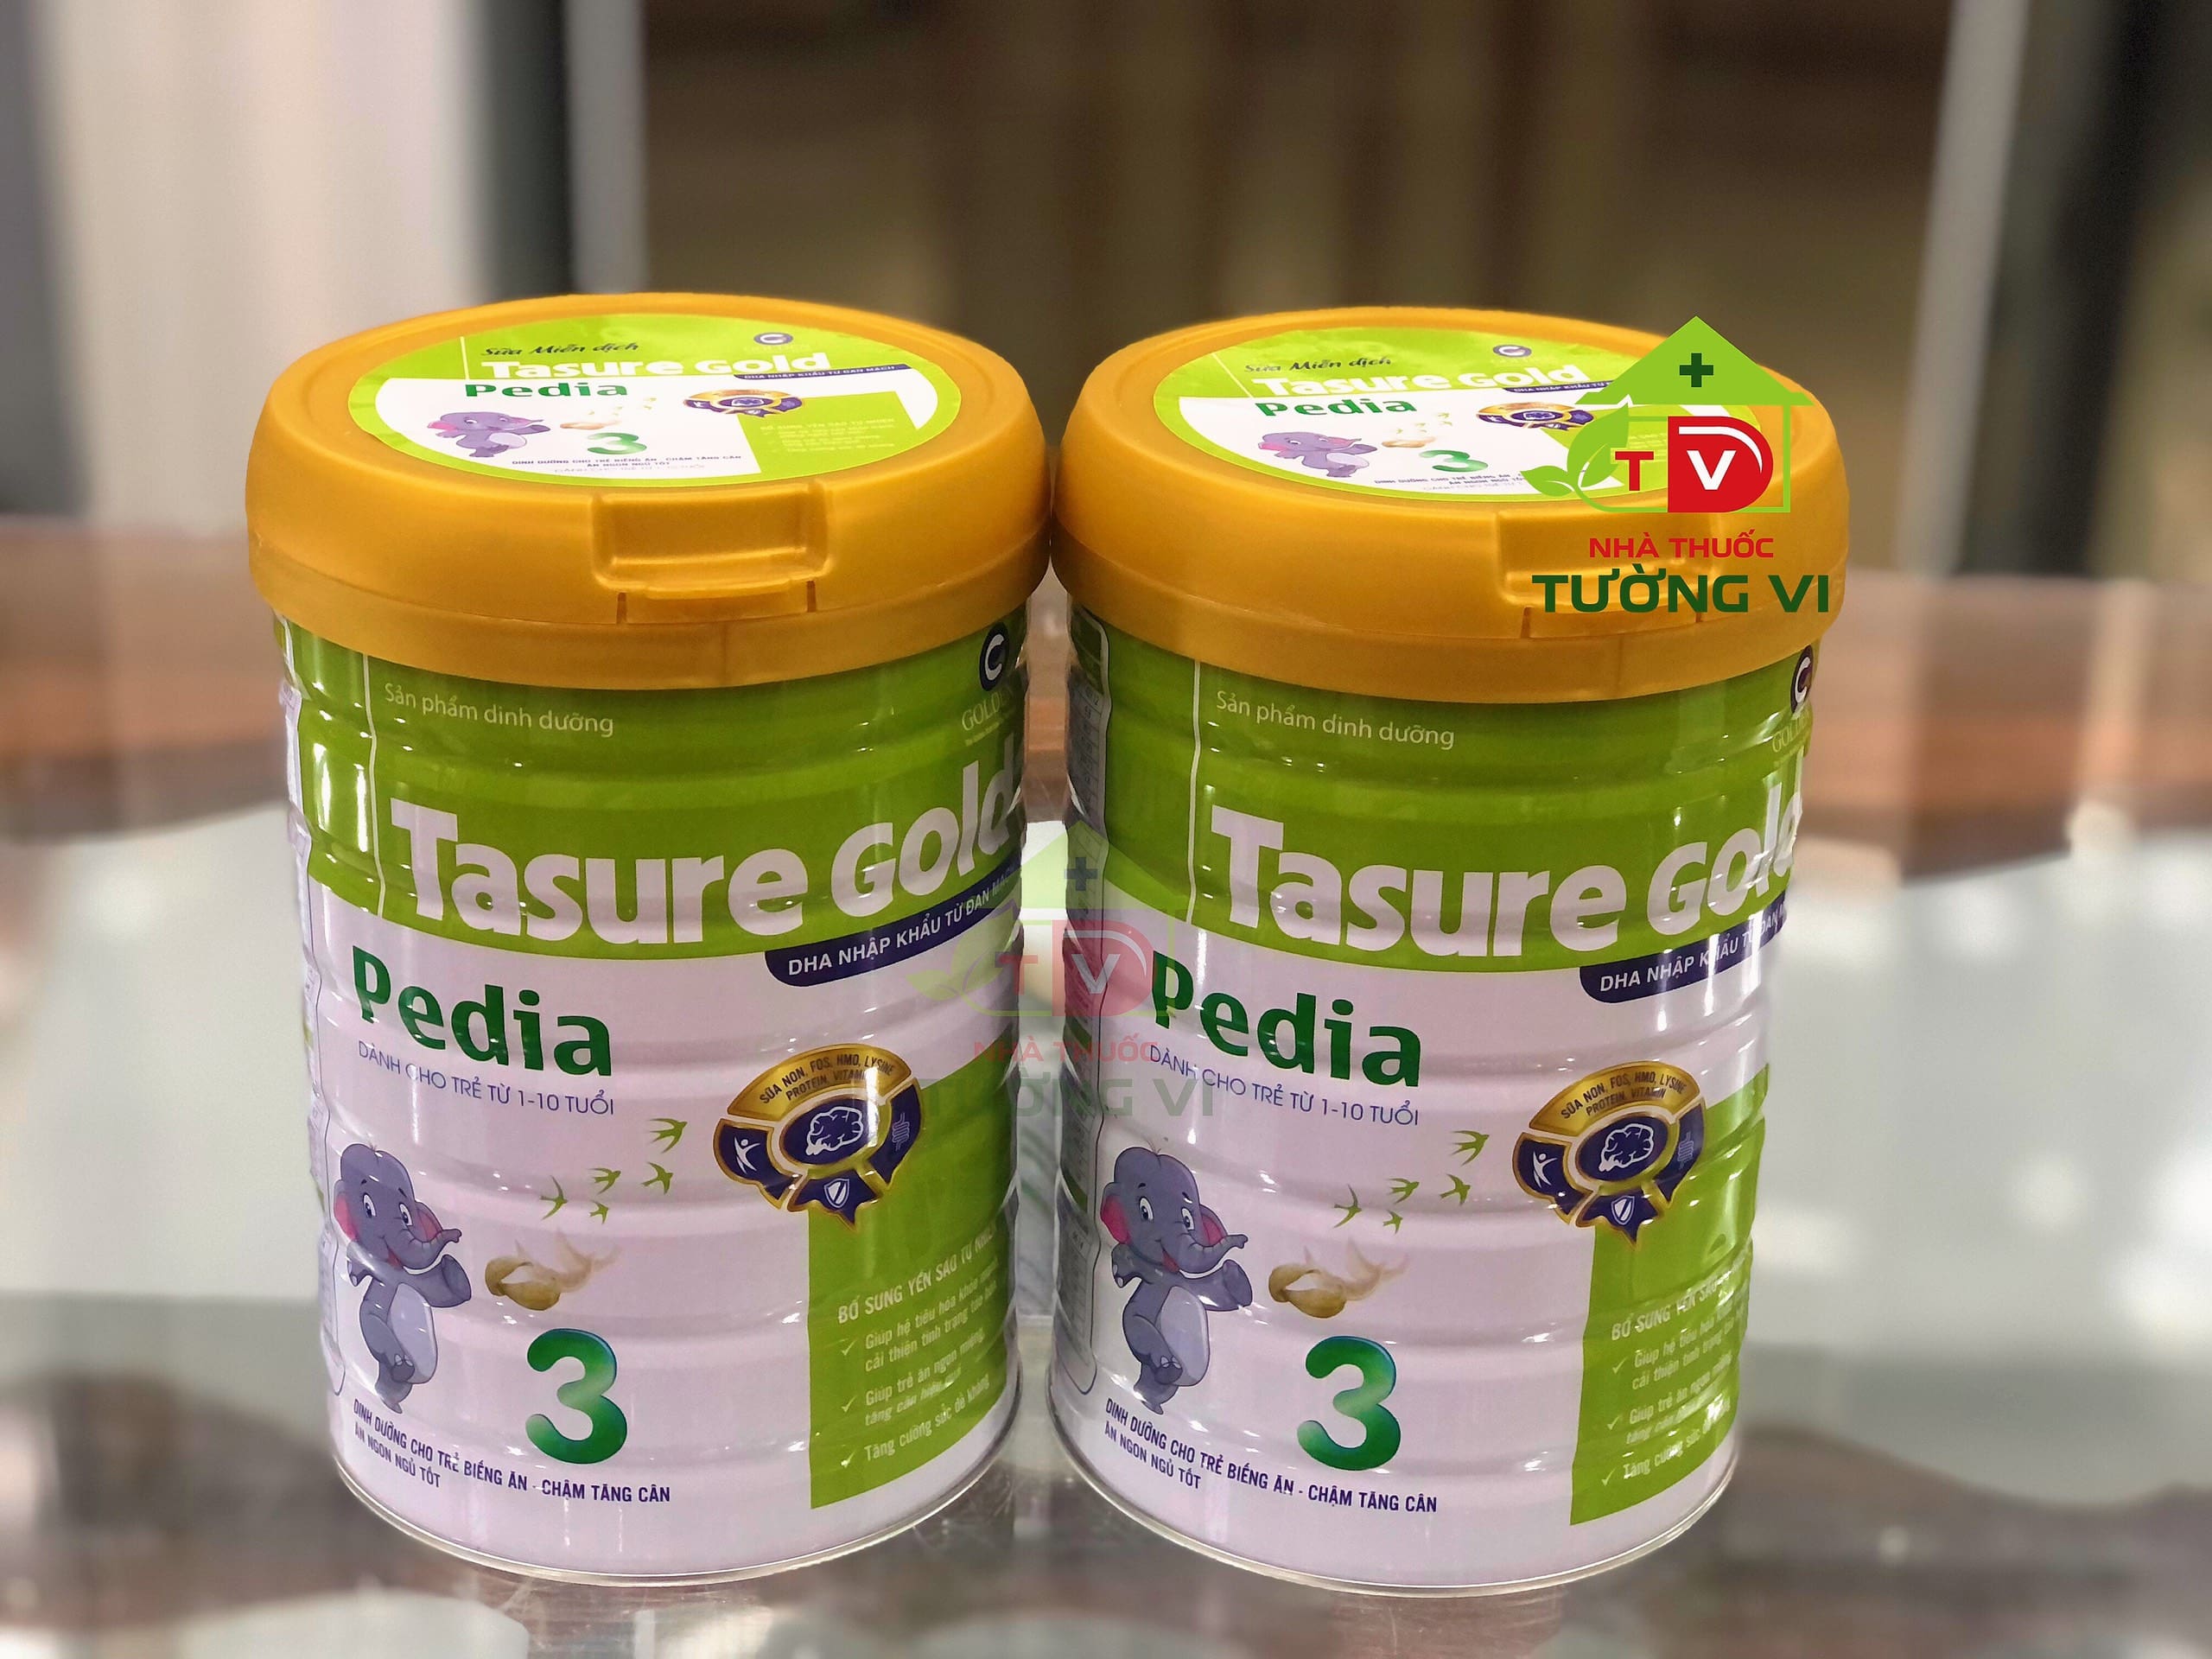 Sữa Tasure Gold Pedia – Dinh dưỡng cho trẻ suy dinh dưỡng biếng ăn, thấp còi, chậm tăng cân